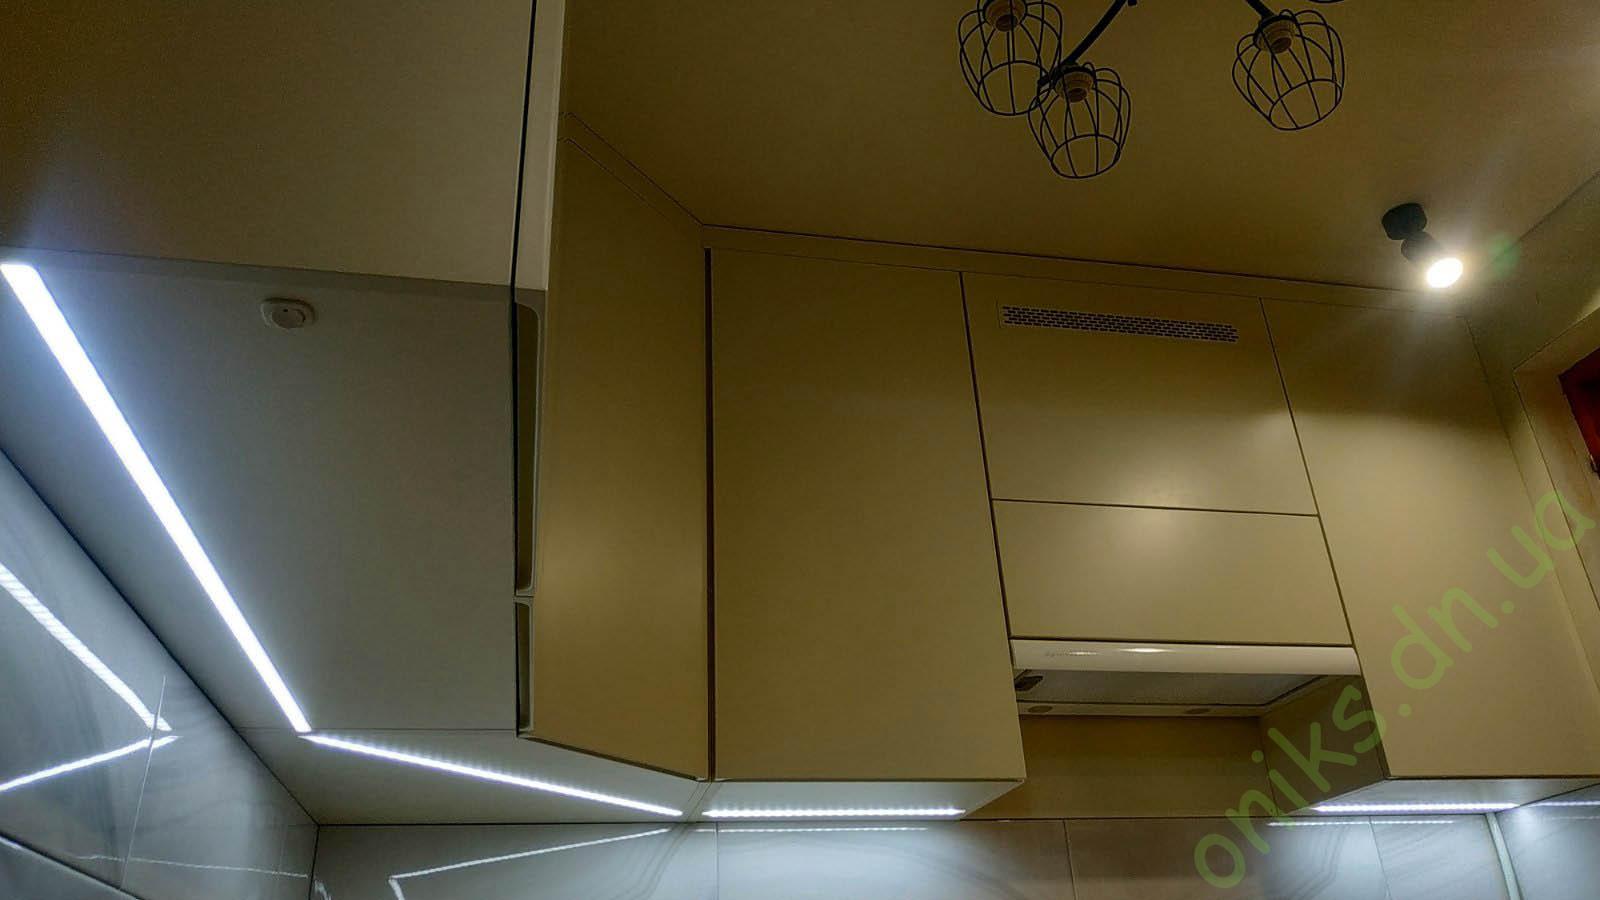 Купить кухню угловую со встроенной столешницей вместо подоконника и дополнительным модулем в Донецке